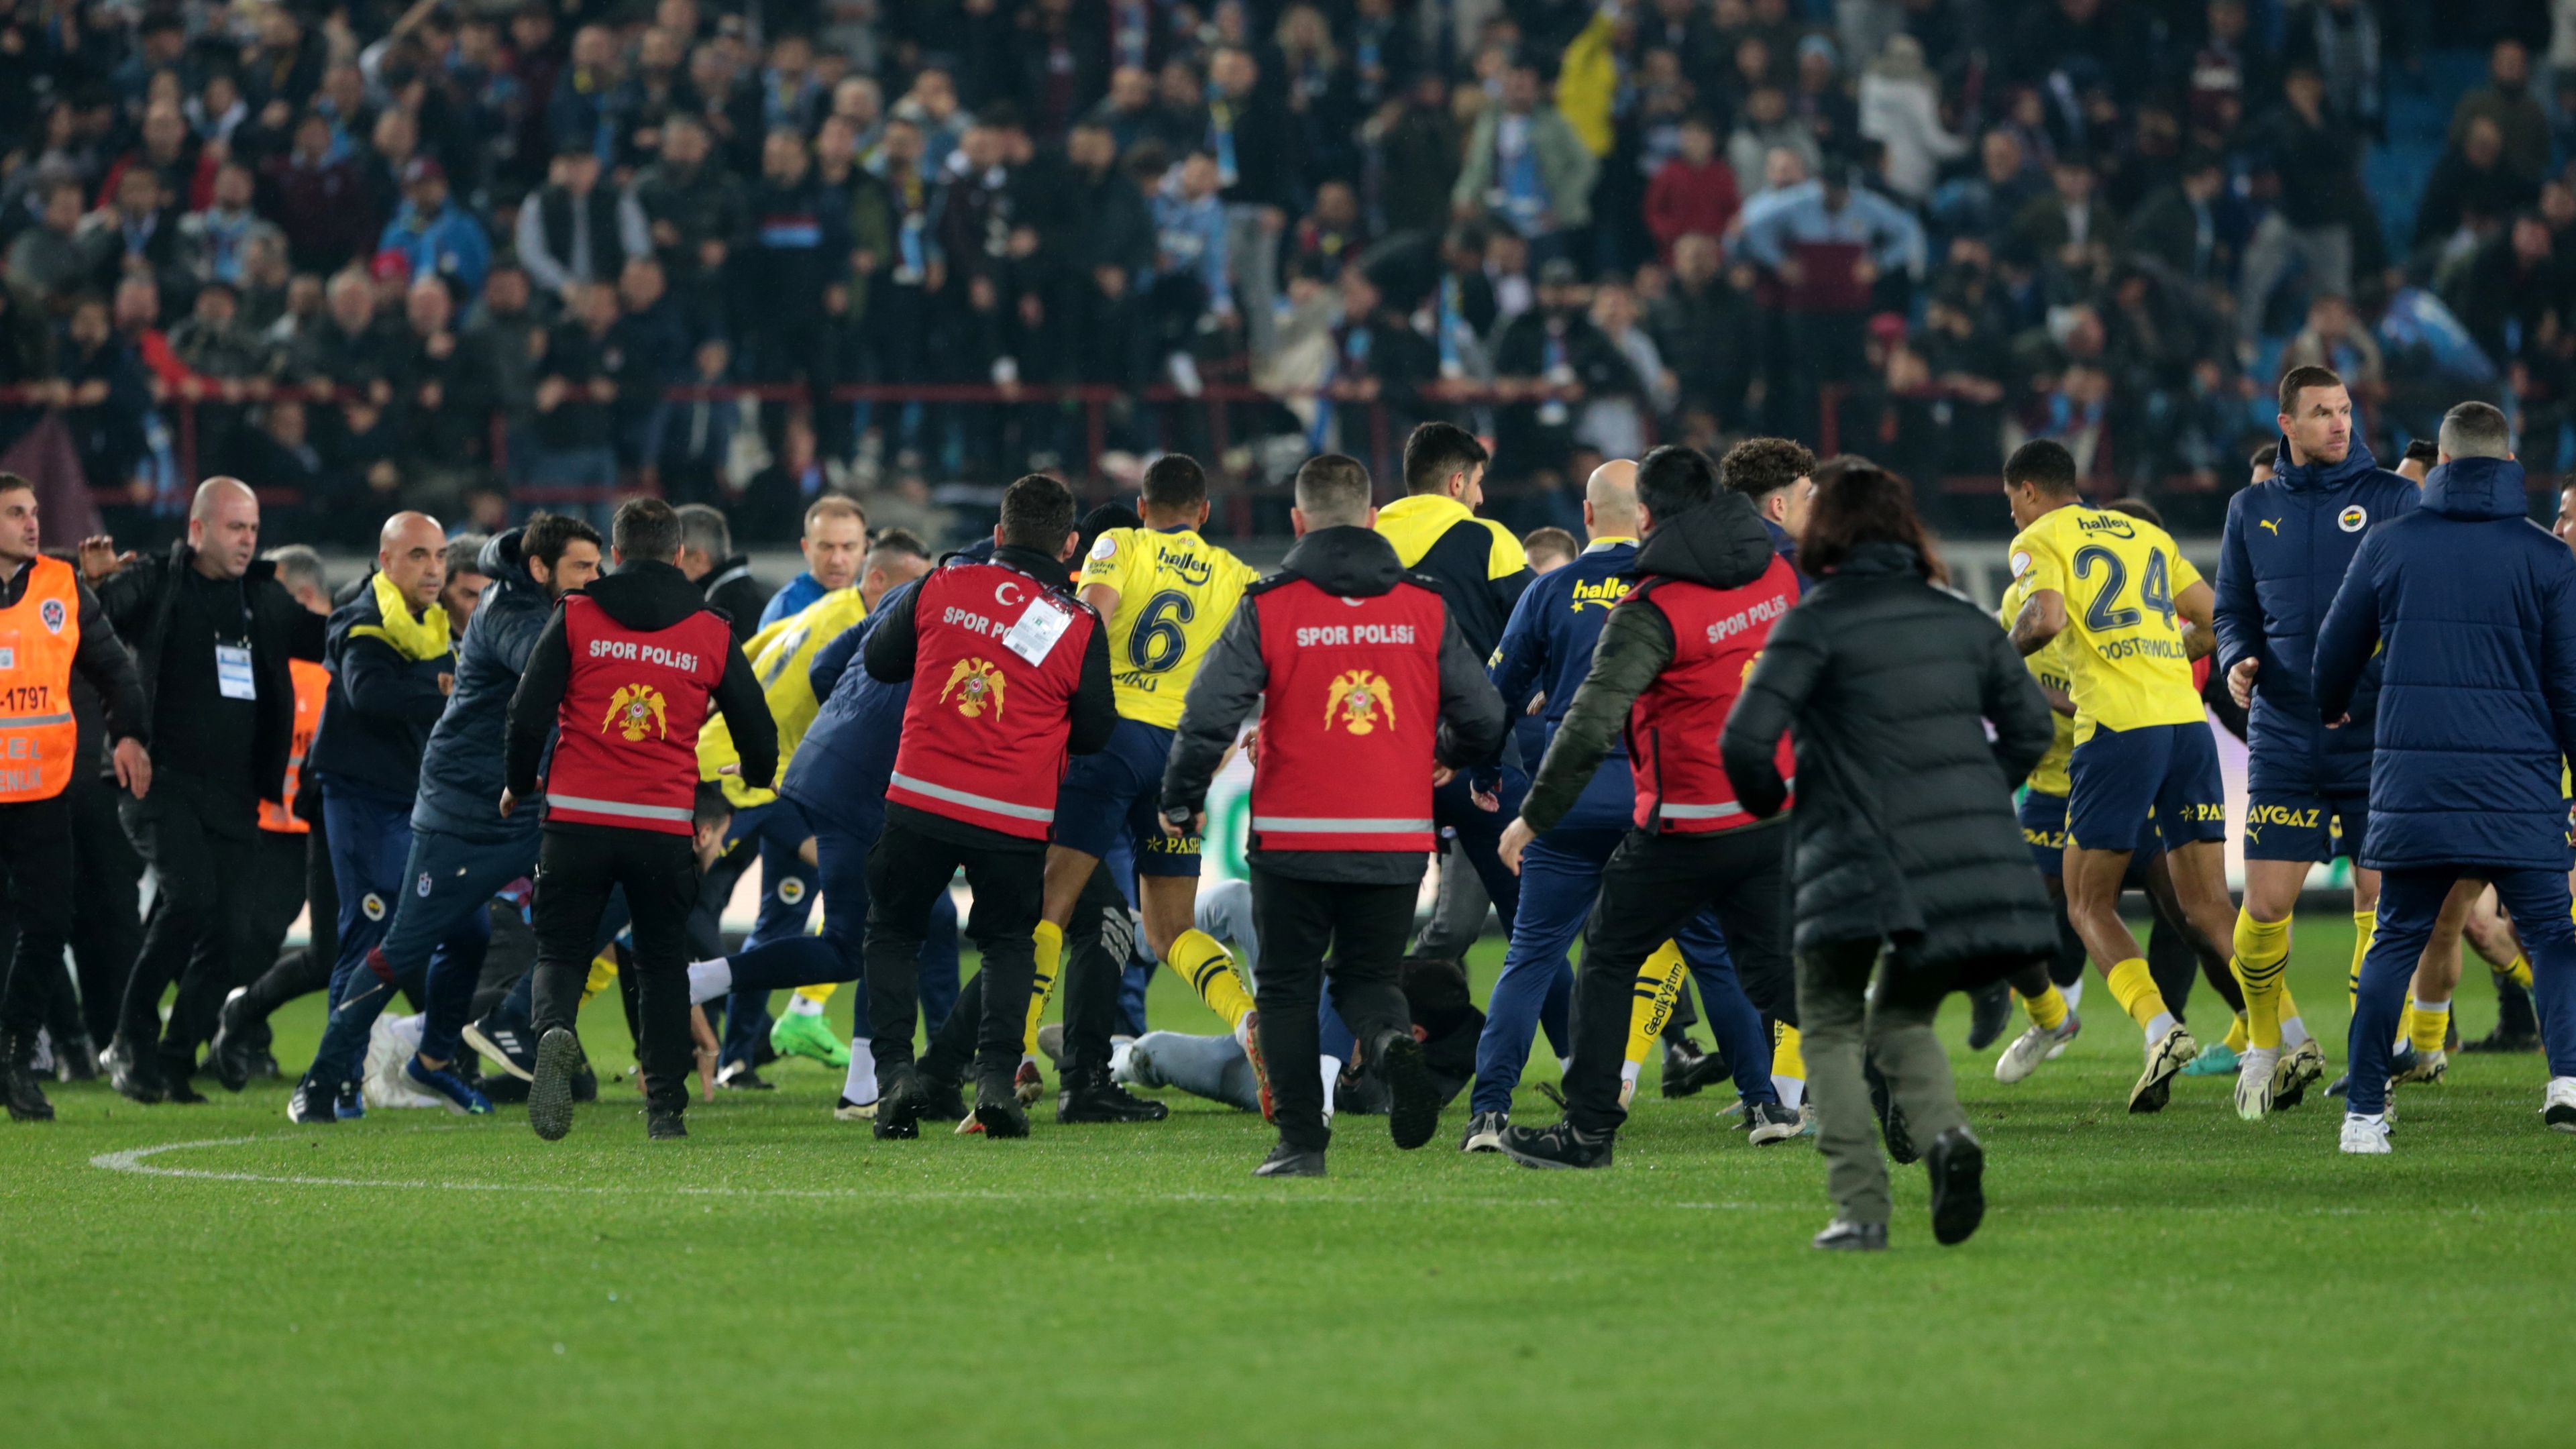 A török futball az utóbbi időben többször került a címlapokra az erőszakos  megmozdulások miatt.